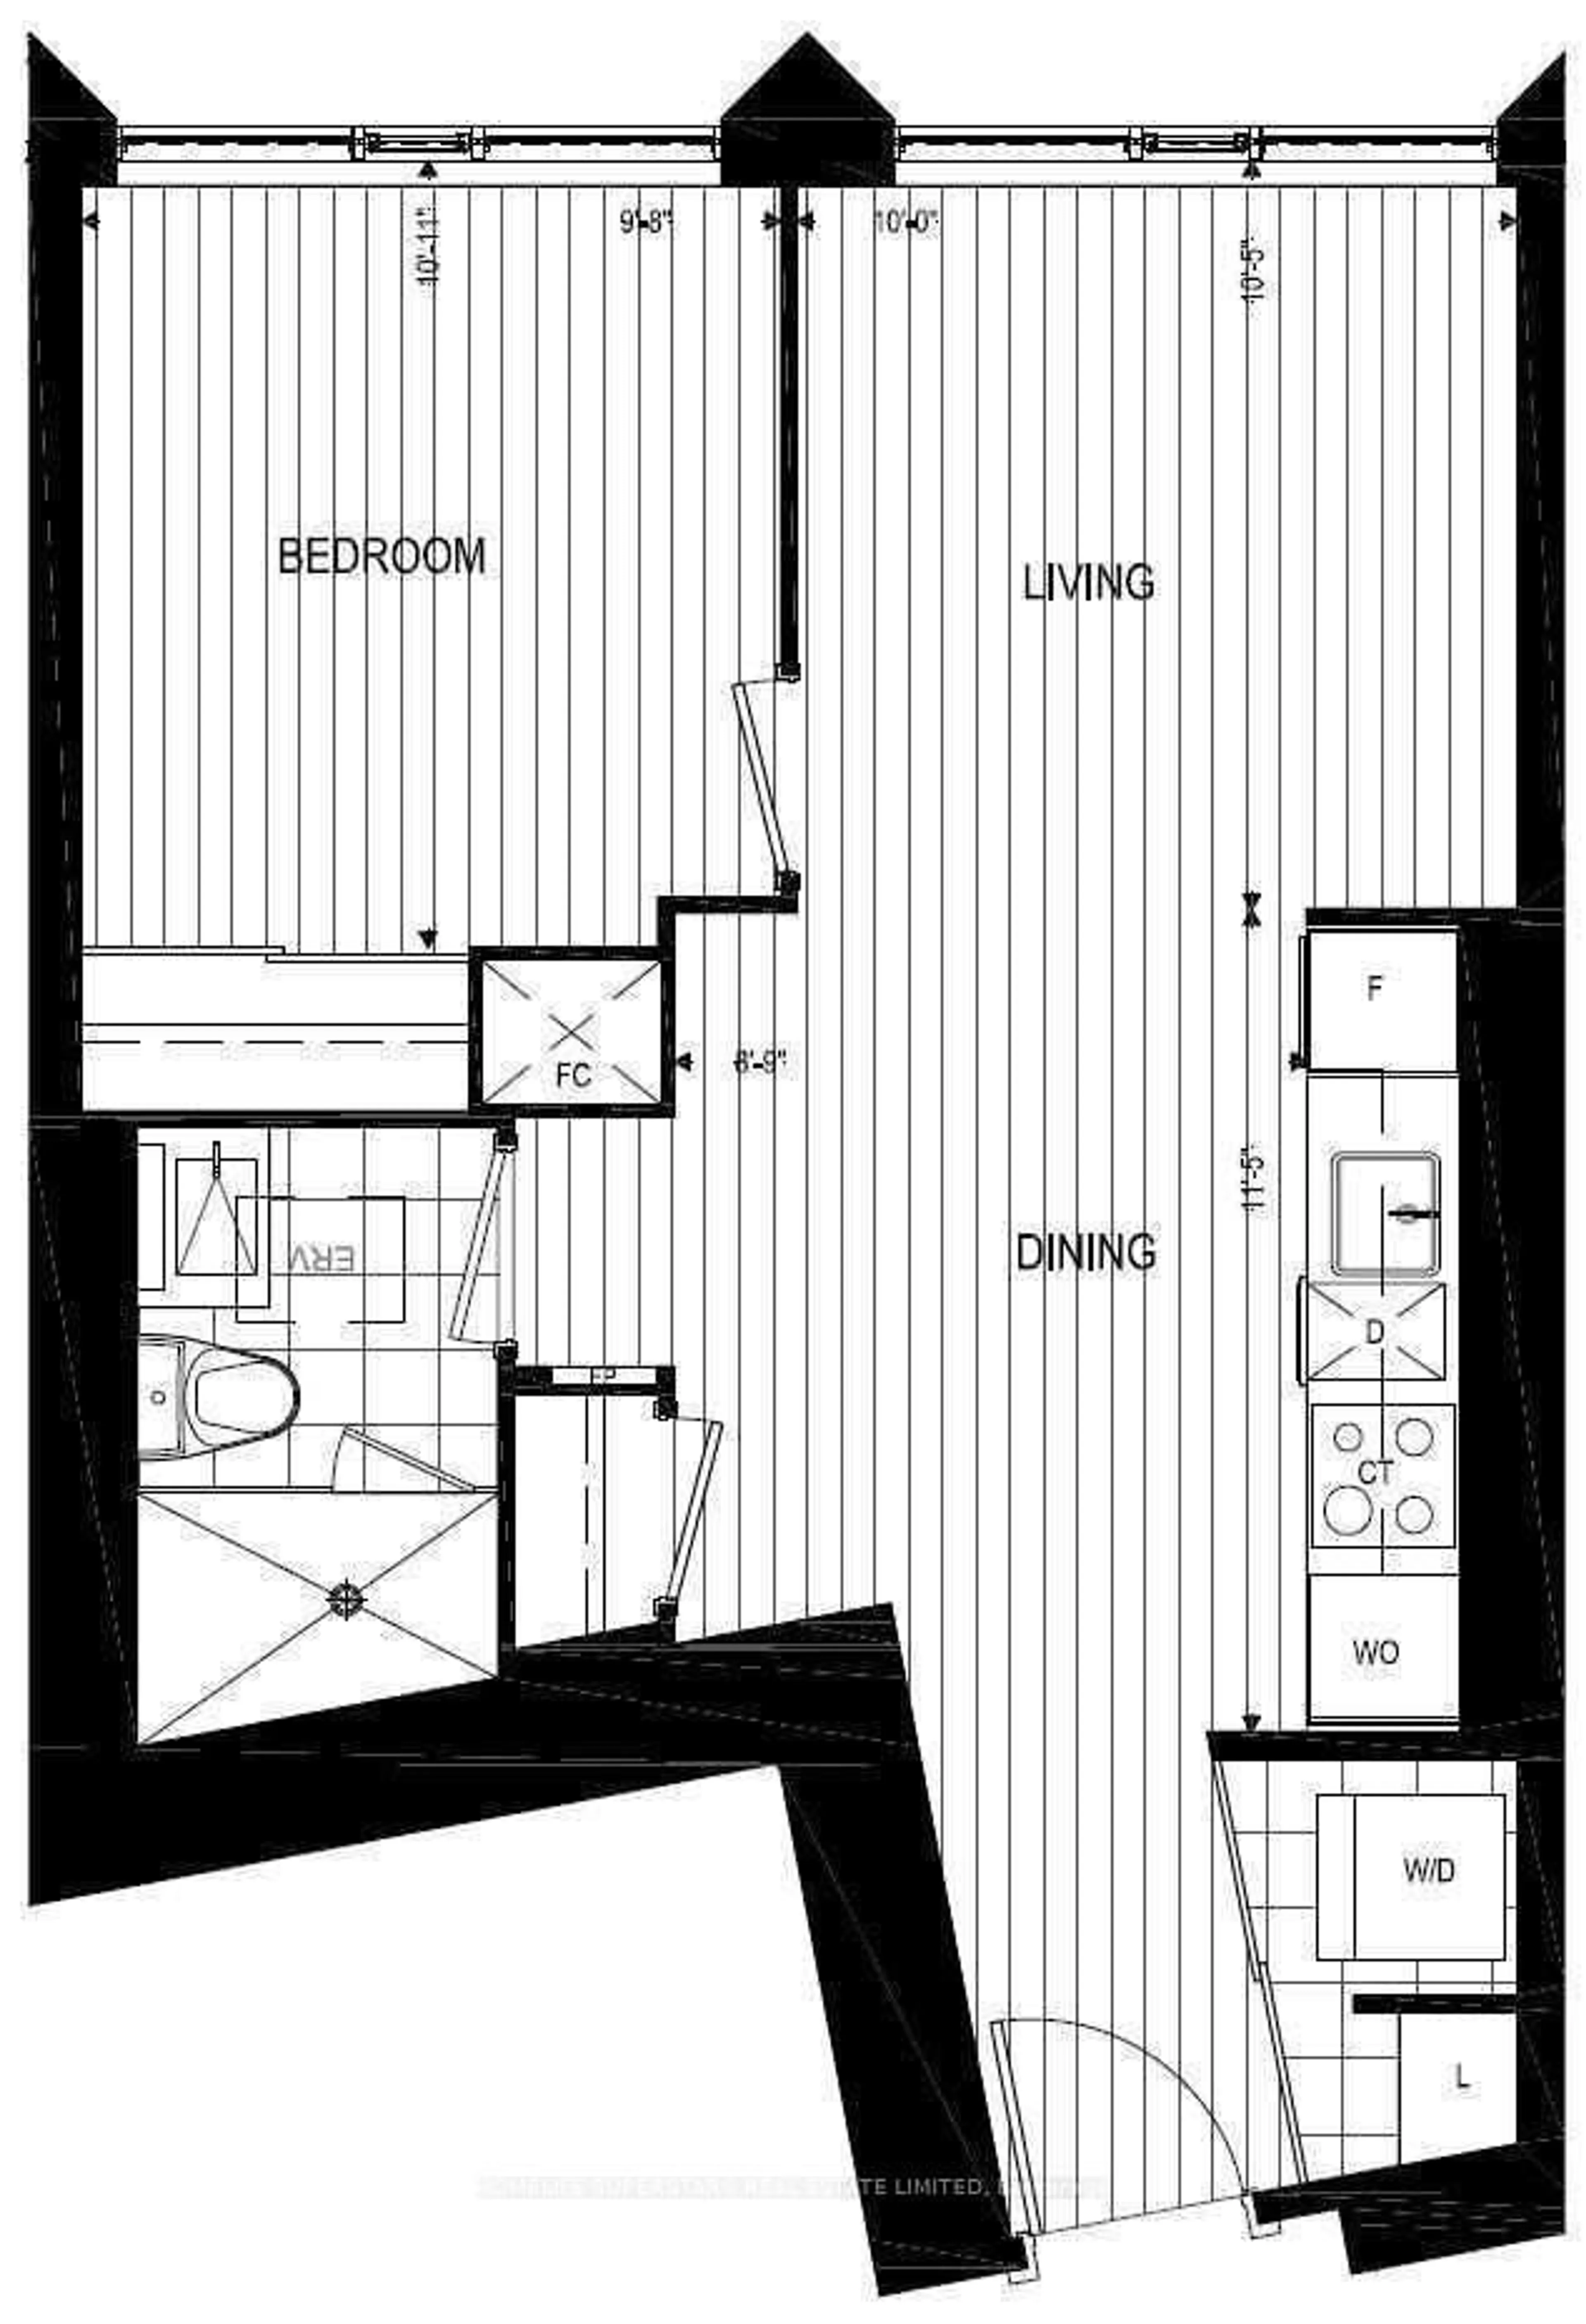 Floor plan for 10 York St #6108, Toronto Ontario M5J 0E1